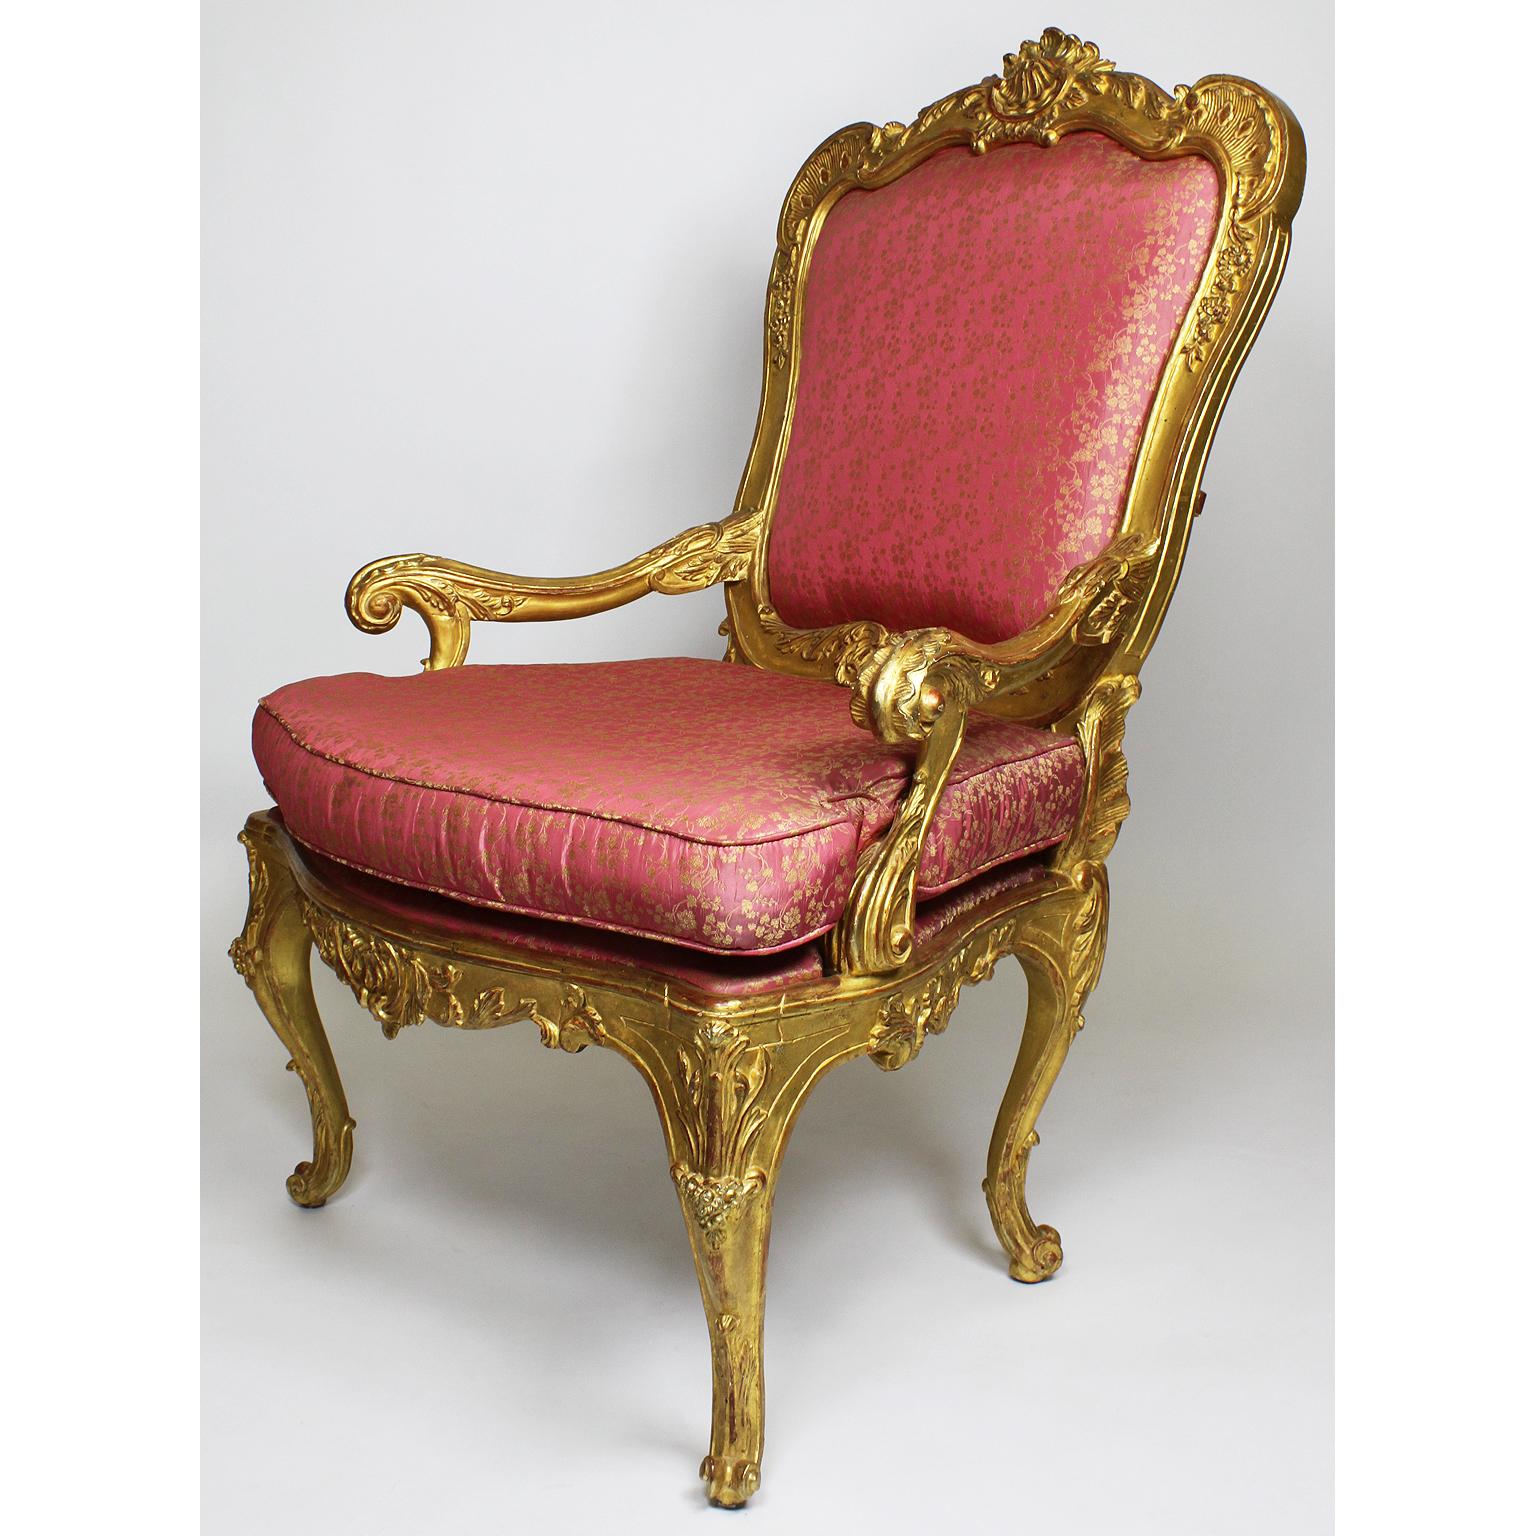 Paire de fauteuils trône en bois doré de style rococo vénitien italien. Les cadres ornementalement sculptés avec de larges accoudoirs ouverts et enroulés, un dossier rembourré couronné d'un cimier en coquille sculpté en bois doré et de motifs